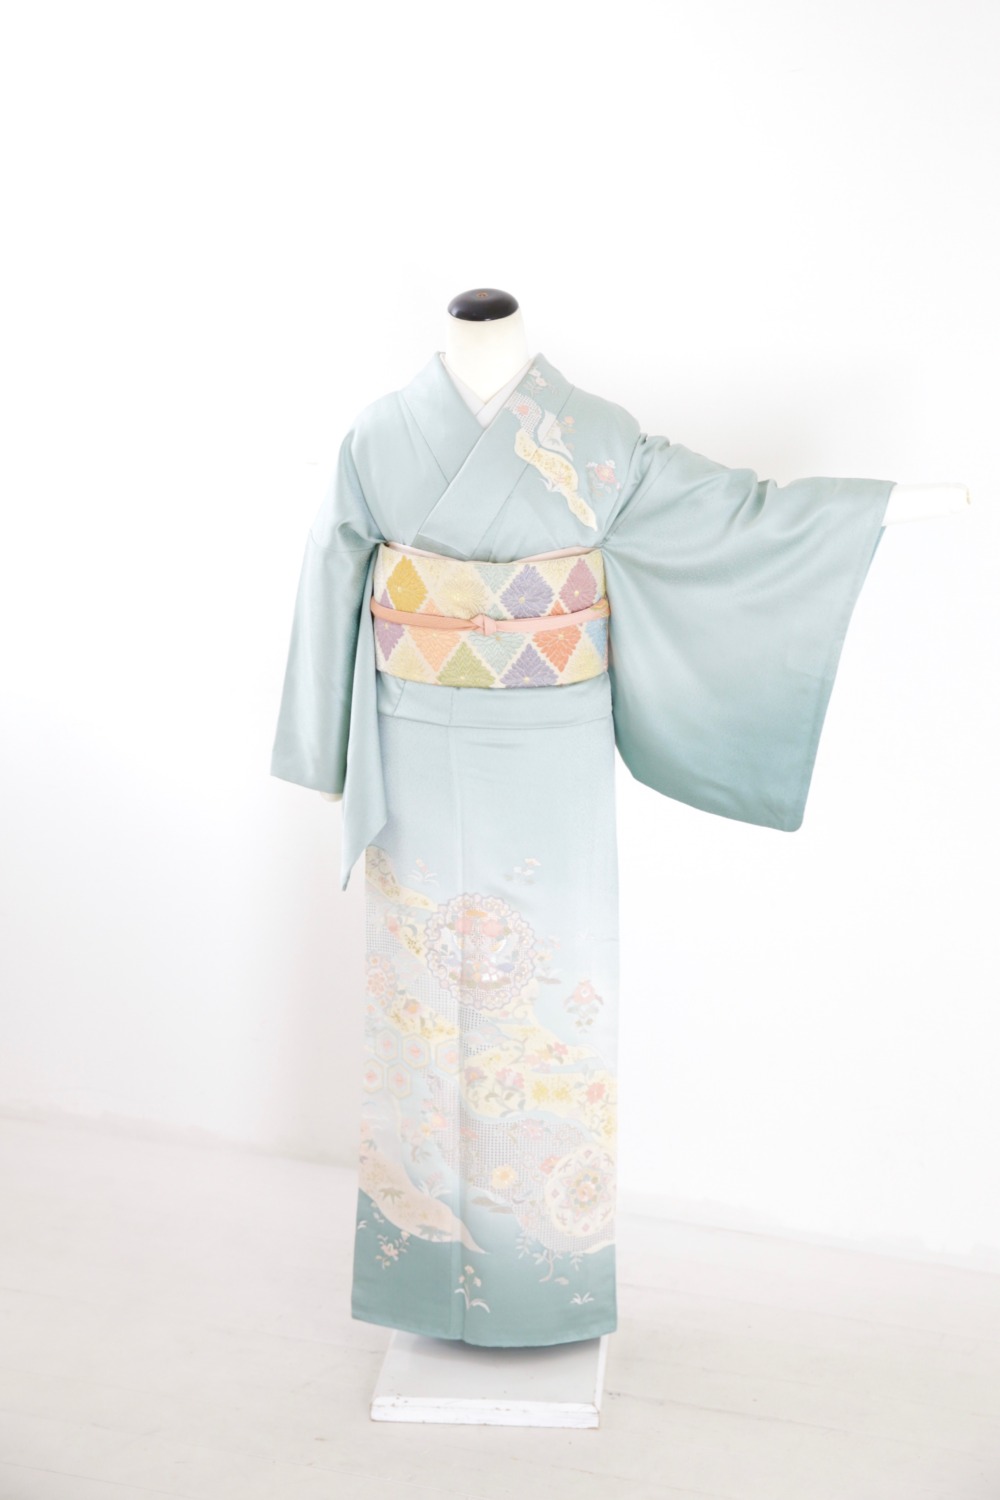 スワトウ刺繍 平安京の風景の付け下げ 着物-